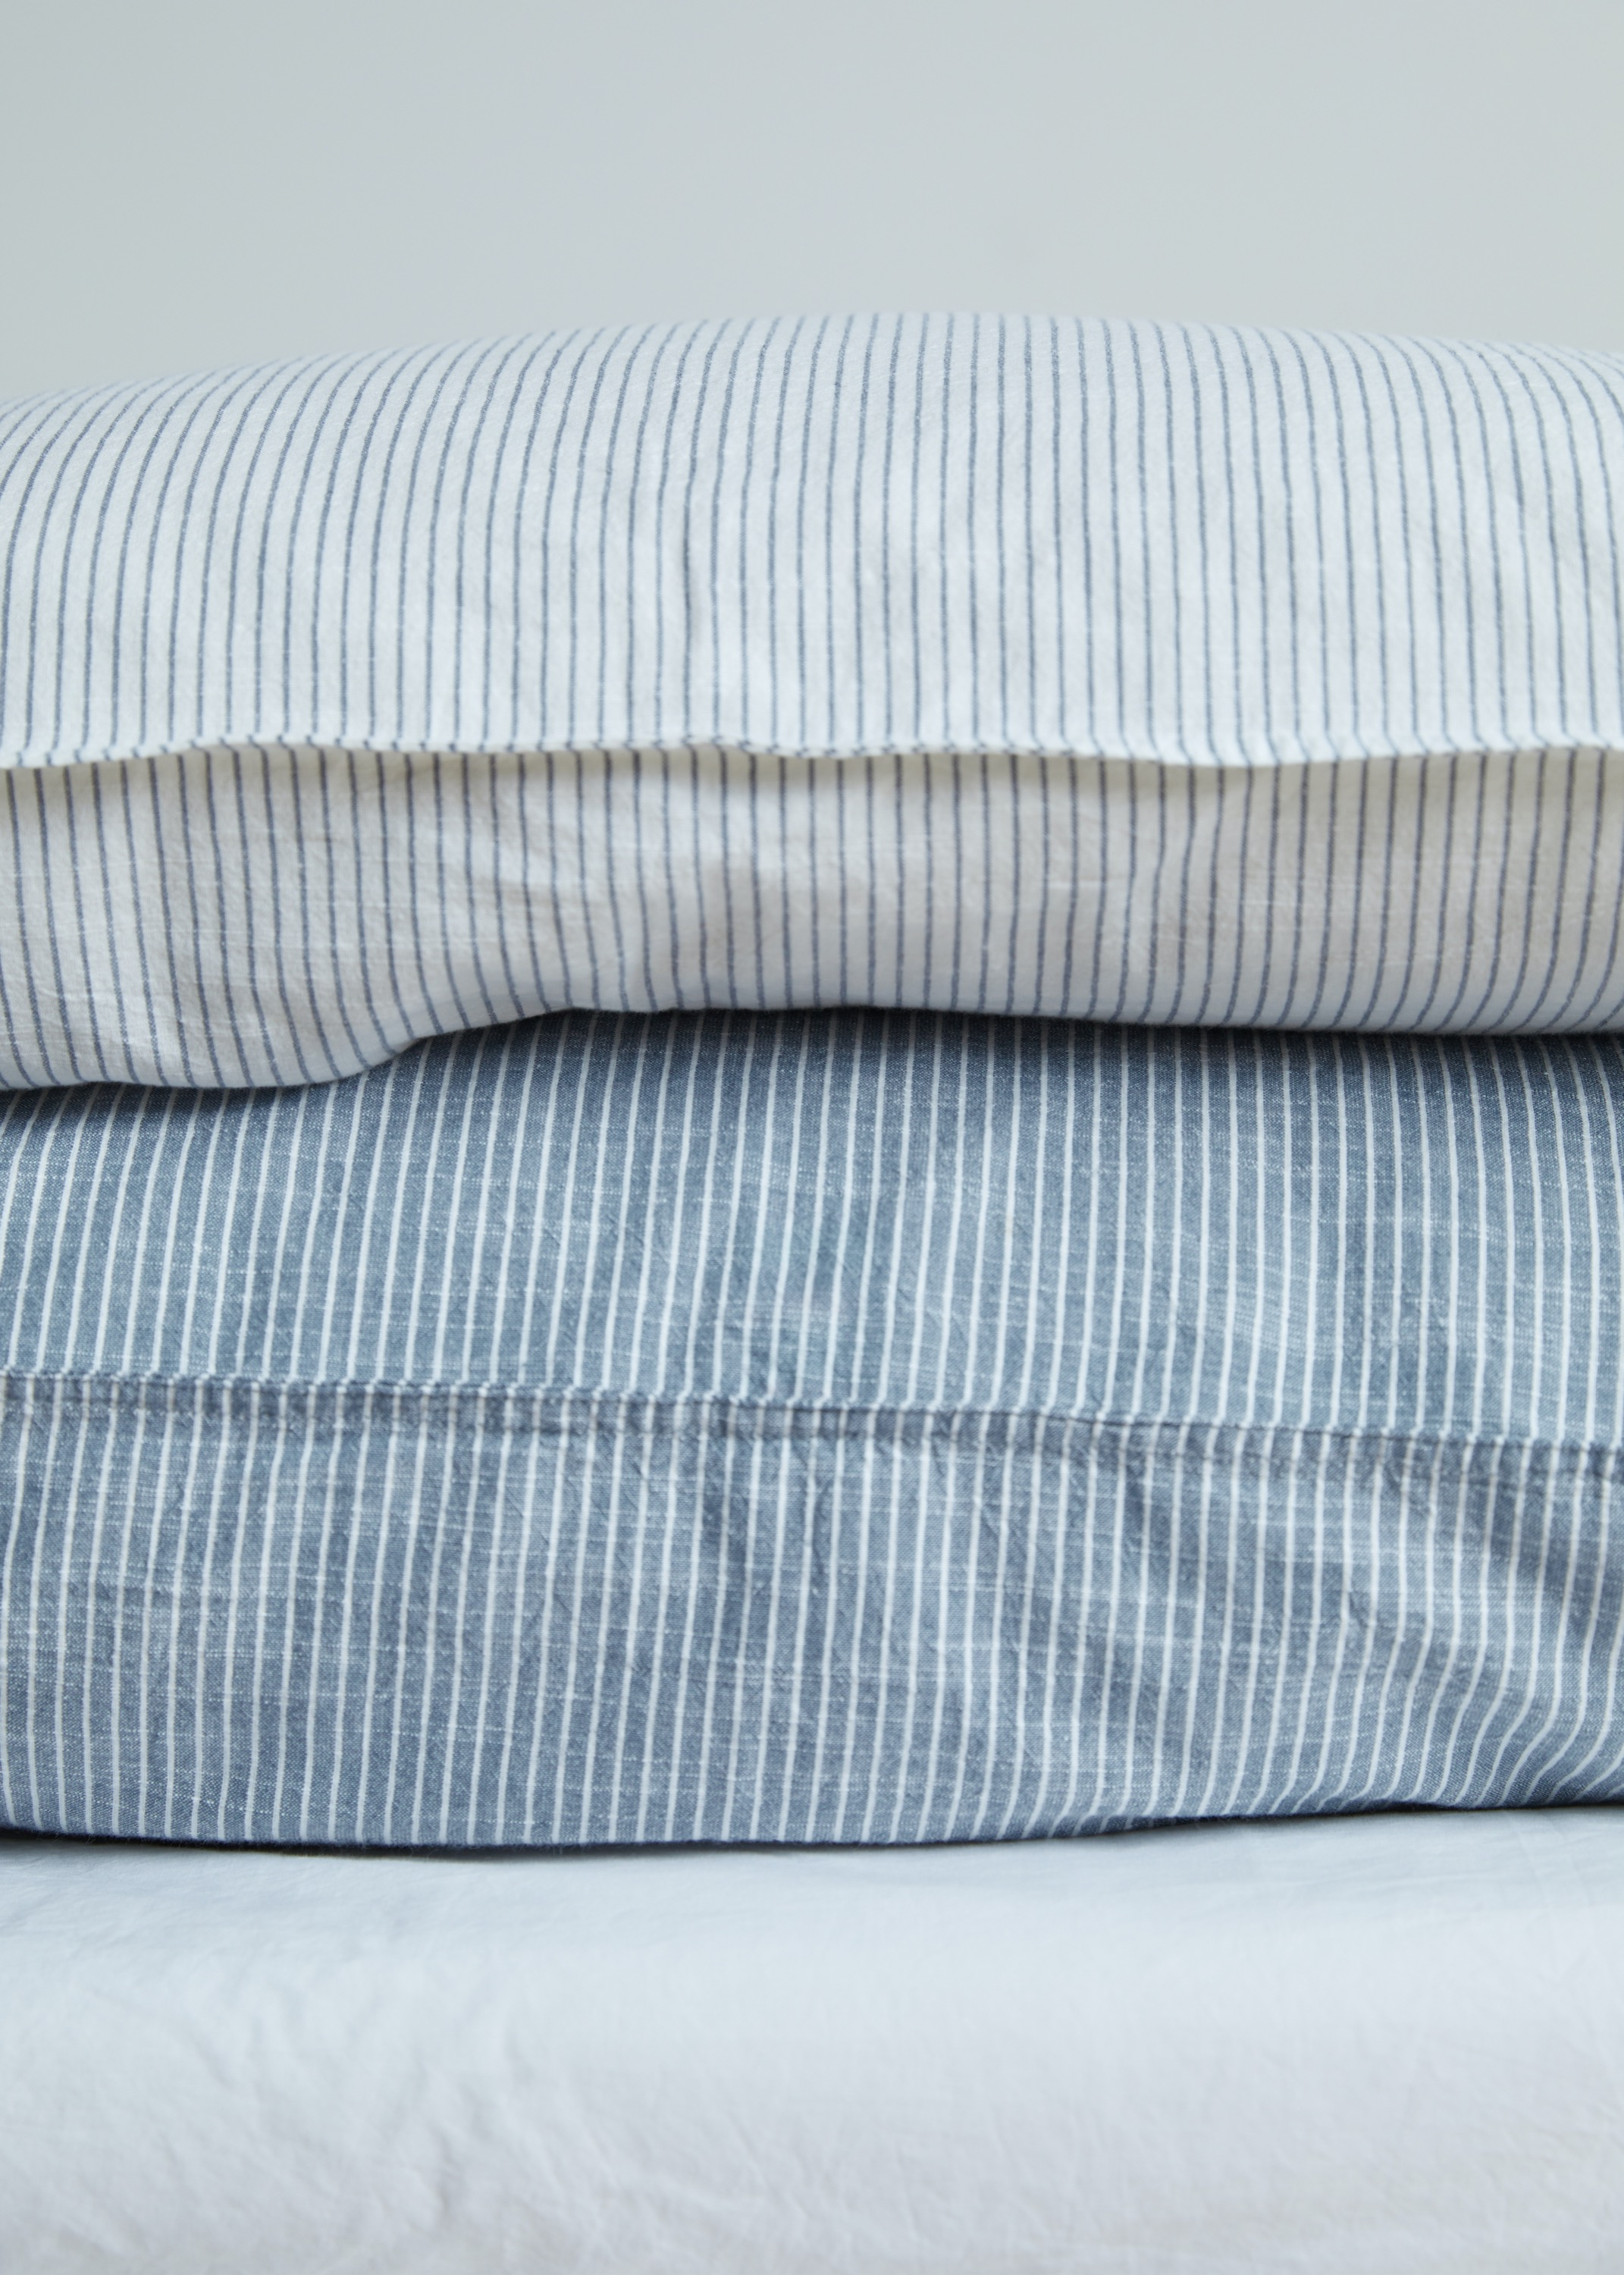 Bedlinen - Duvet Set Striped - Single XL (140x220 + pillow case)